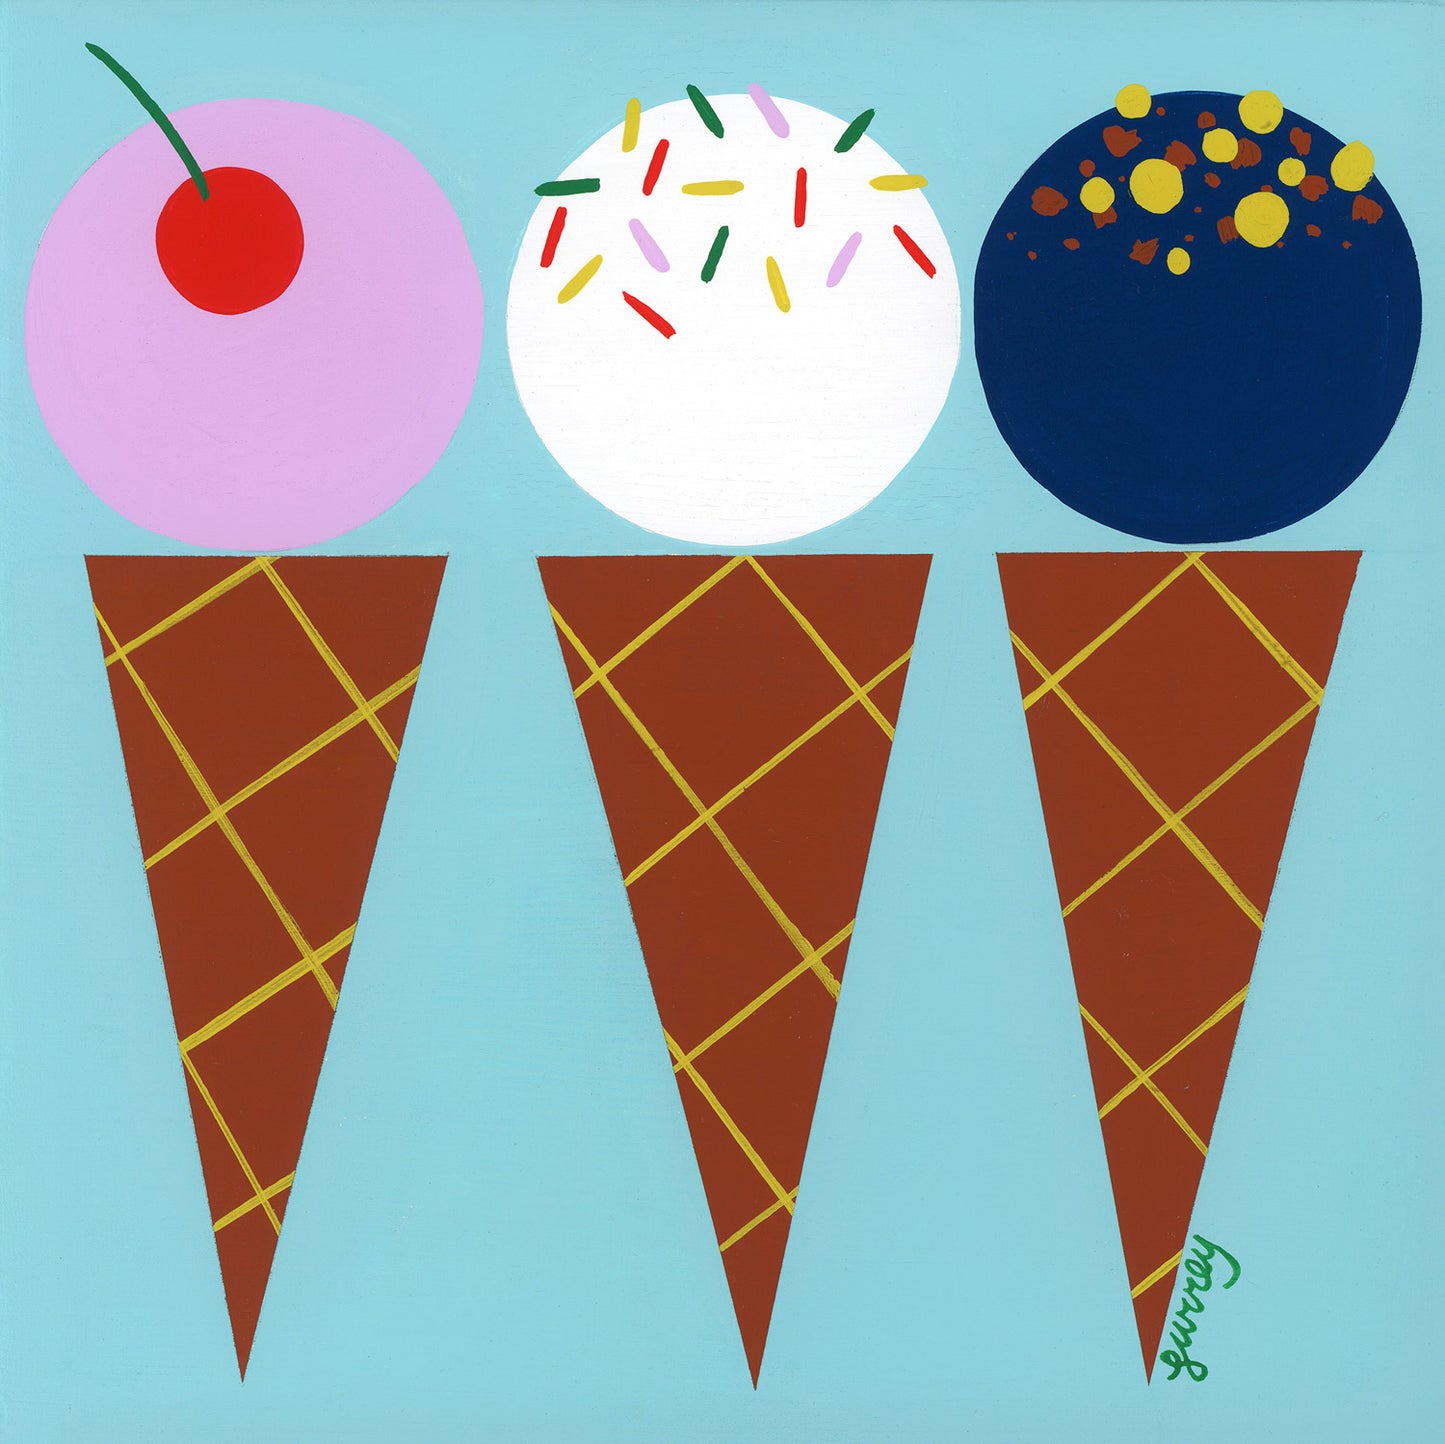 Ellen Surrey - Ice Cream Cones